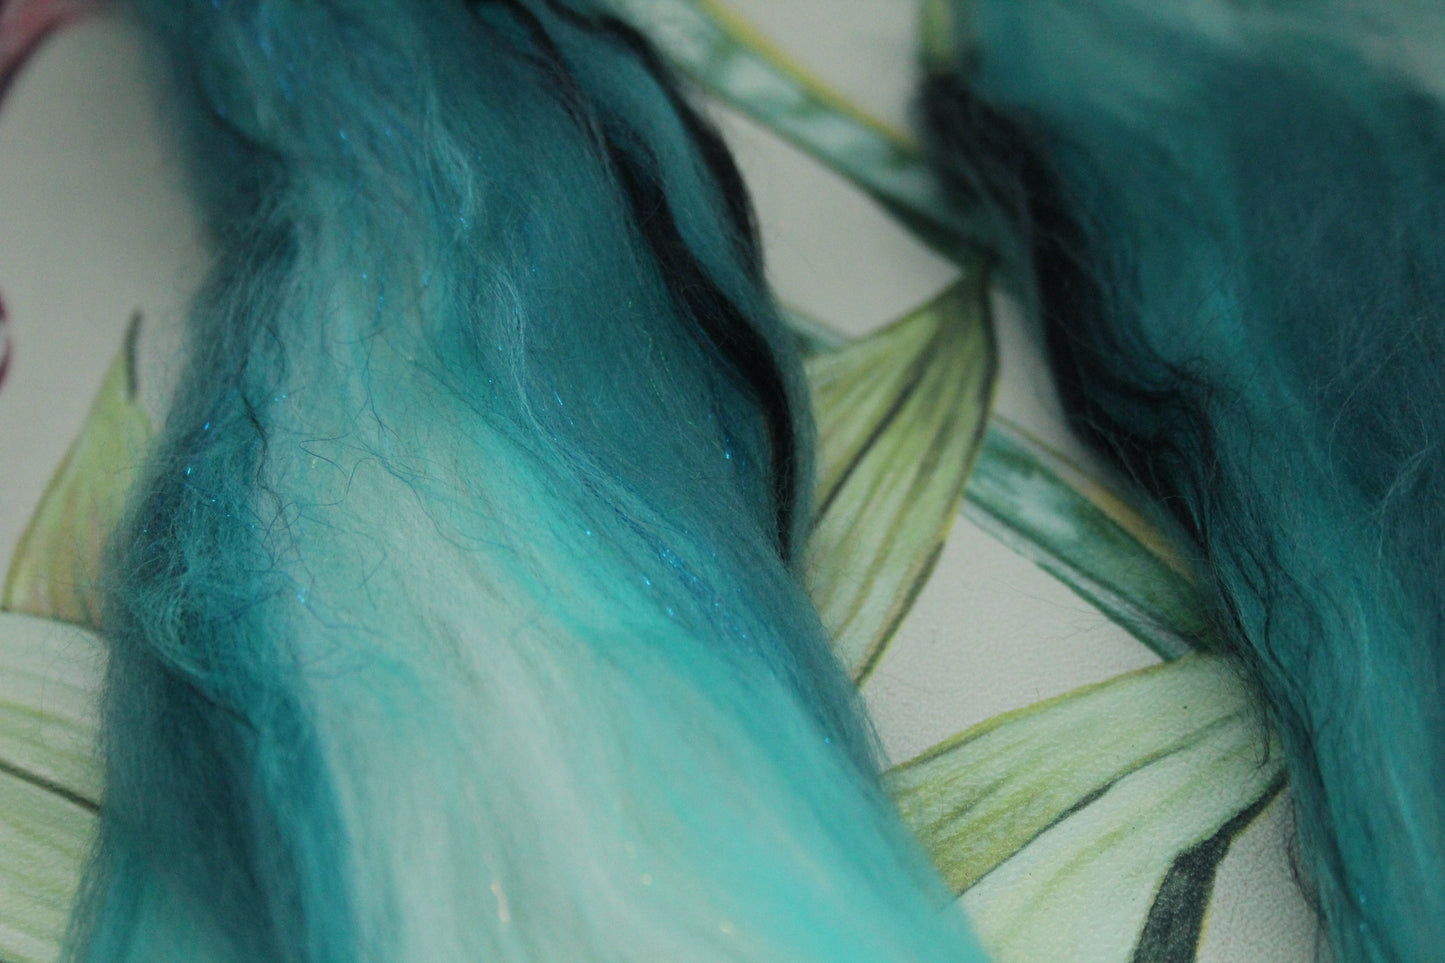 Merino Wool Blend - Turquoise White - 16 grams / 0.5 oz  - Fibre for felting, weaving or spinning